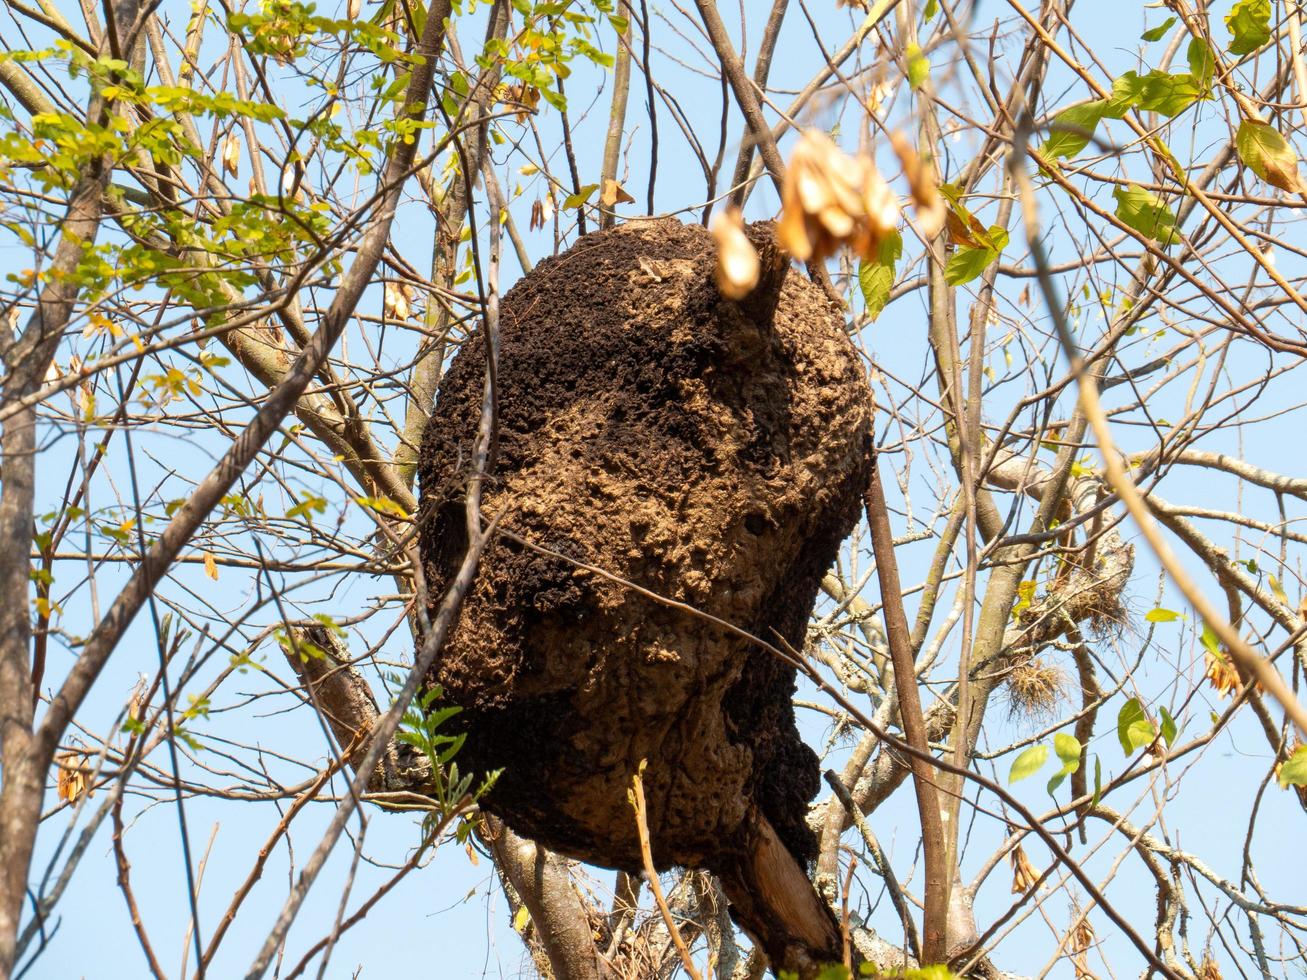 nid de termites en colonie sur l'arbre. ces insectes sont responsables de la destruction des objets en bois et des maisons. photo